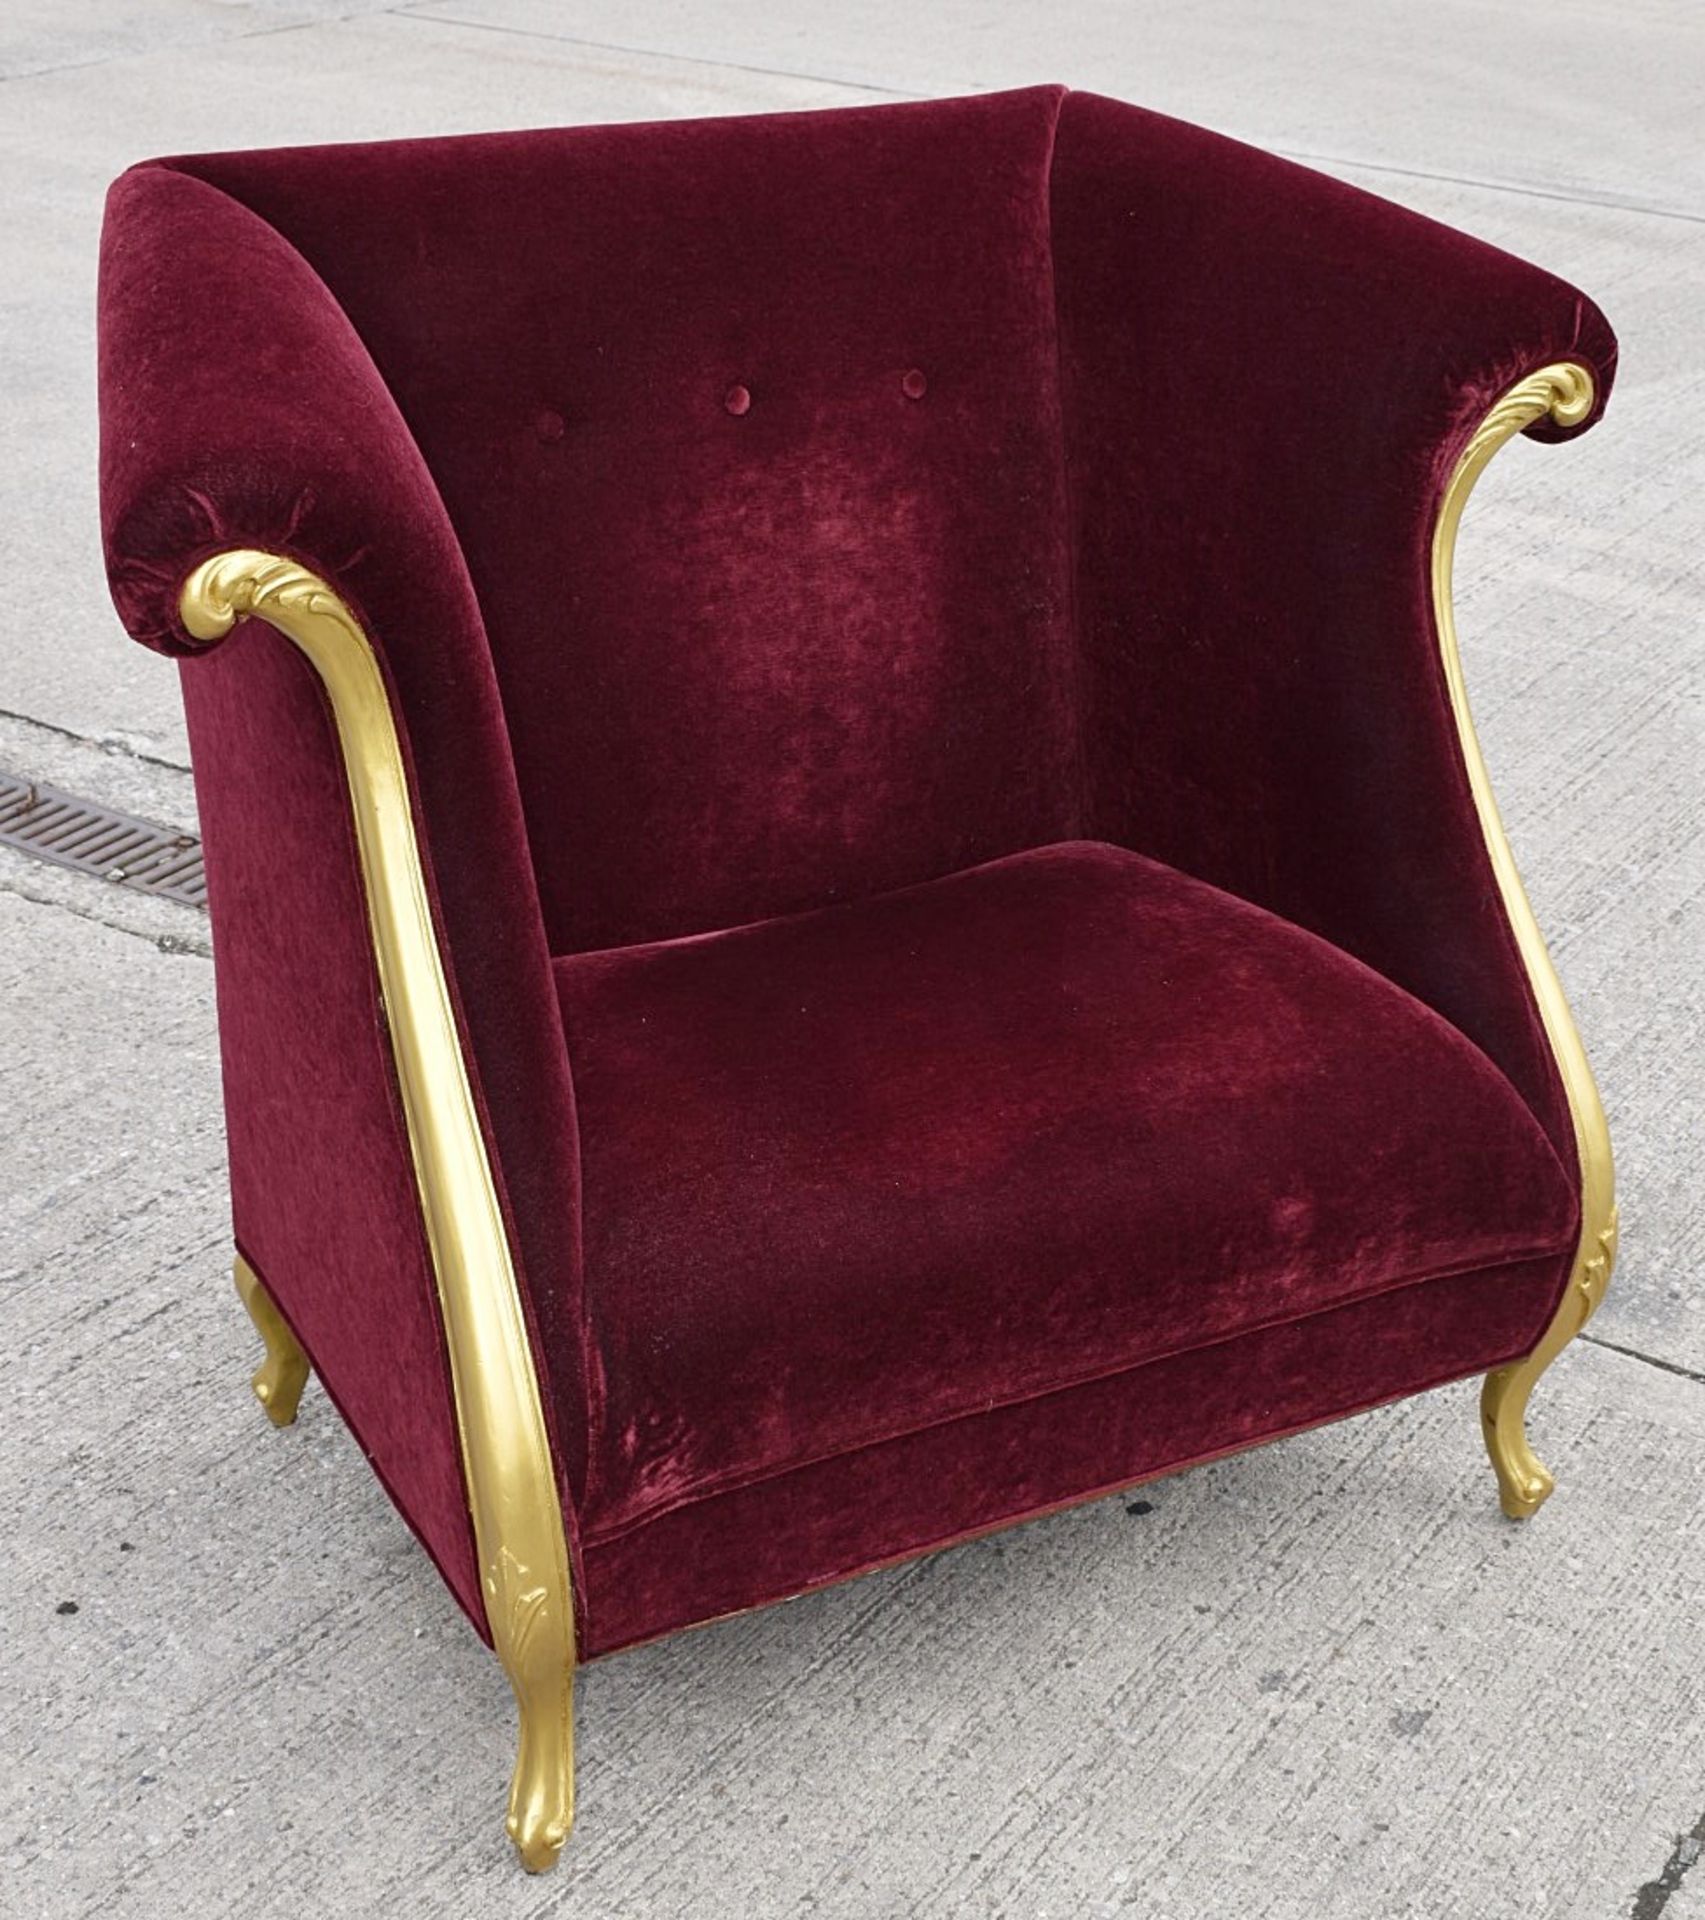 1 x CHRISTOPHER GUY Bespoke Opulent Velvet Upholstered Oversized Armchair - Original Price £4,000 - Image 3 of 10